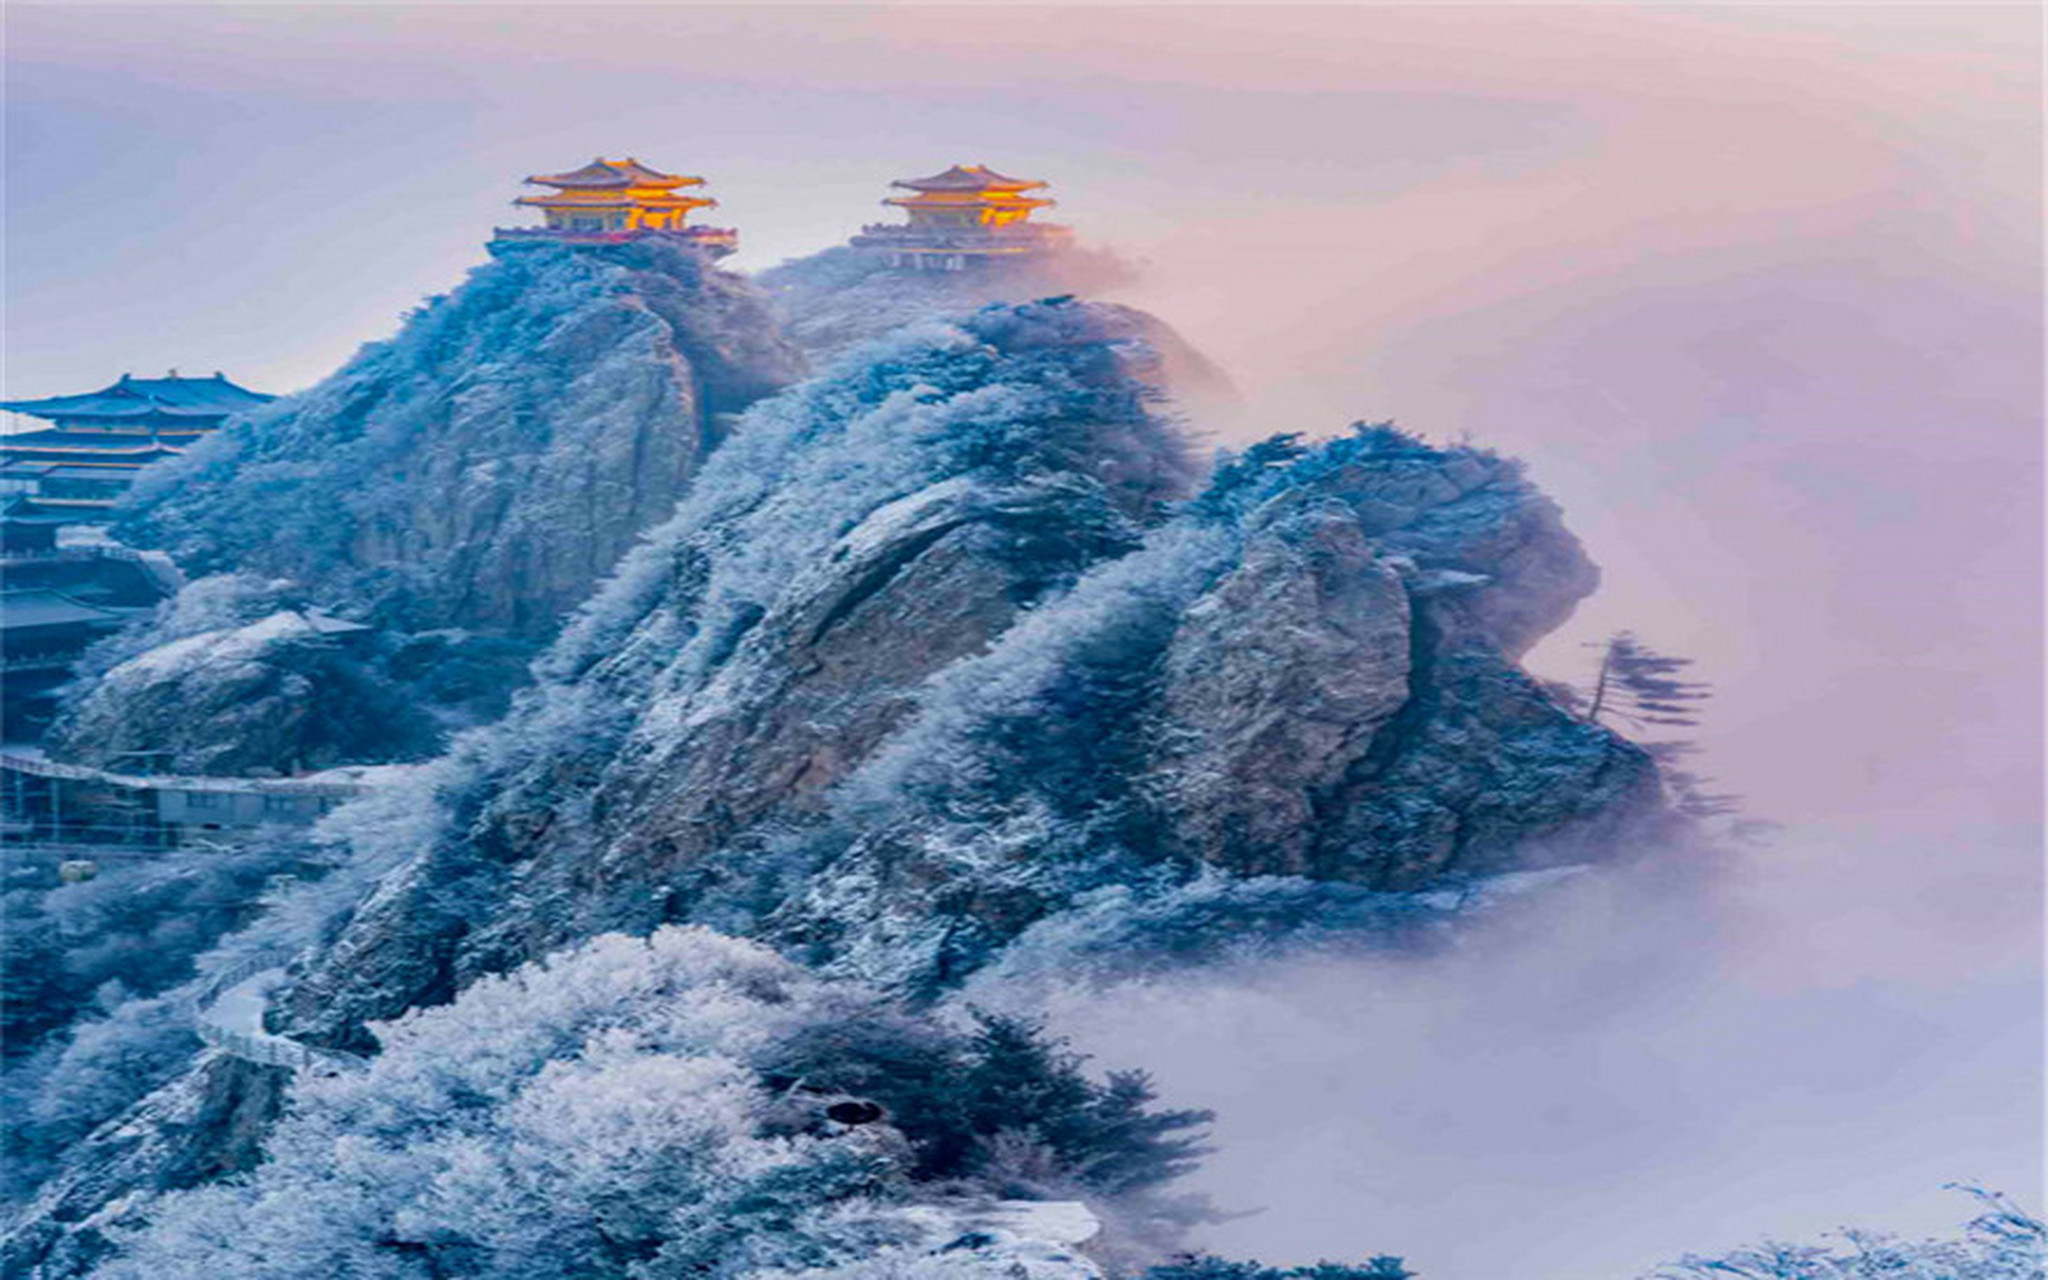 河南老君山:雪光映金顶 千山万壑层云生